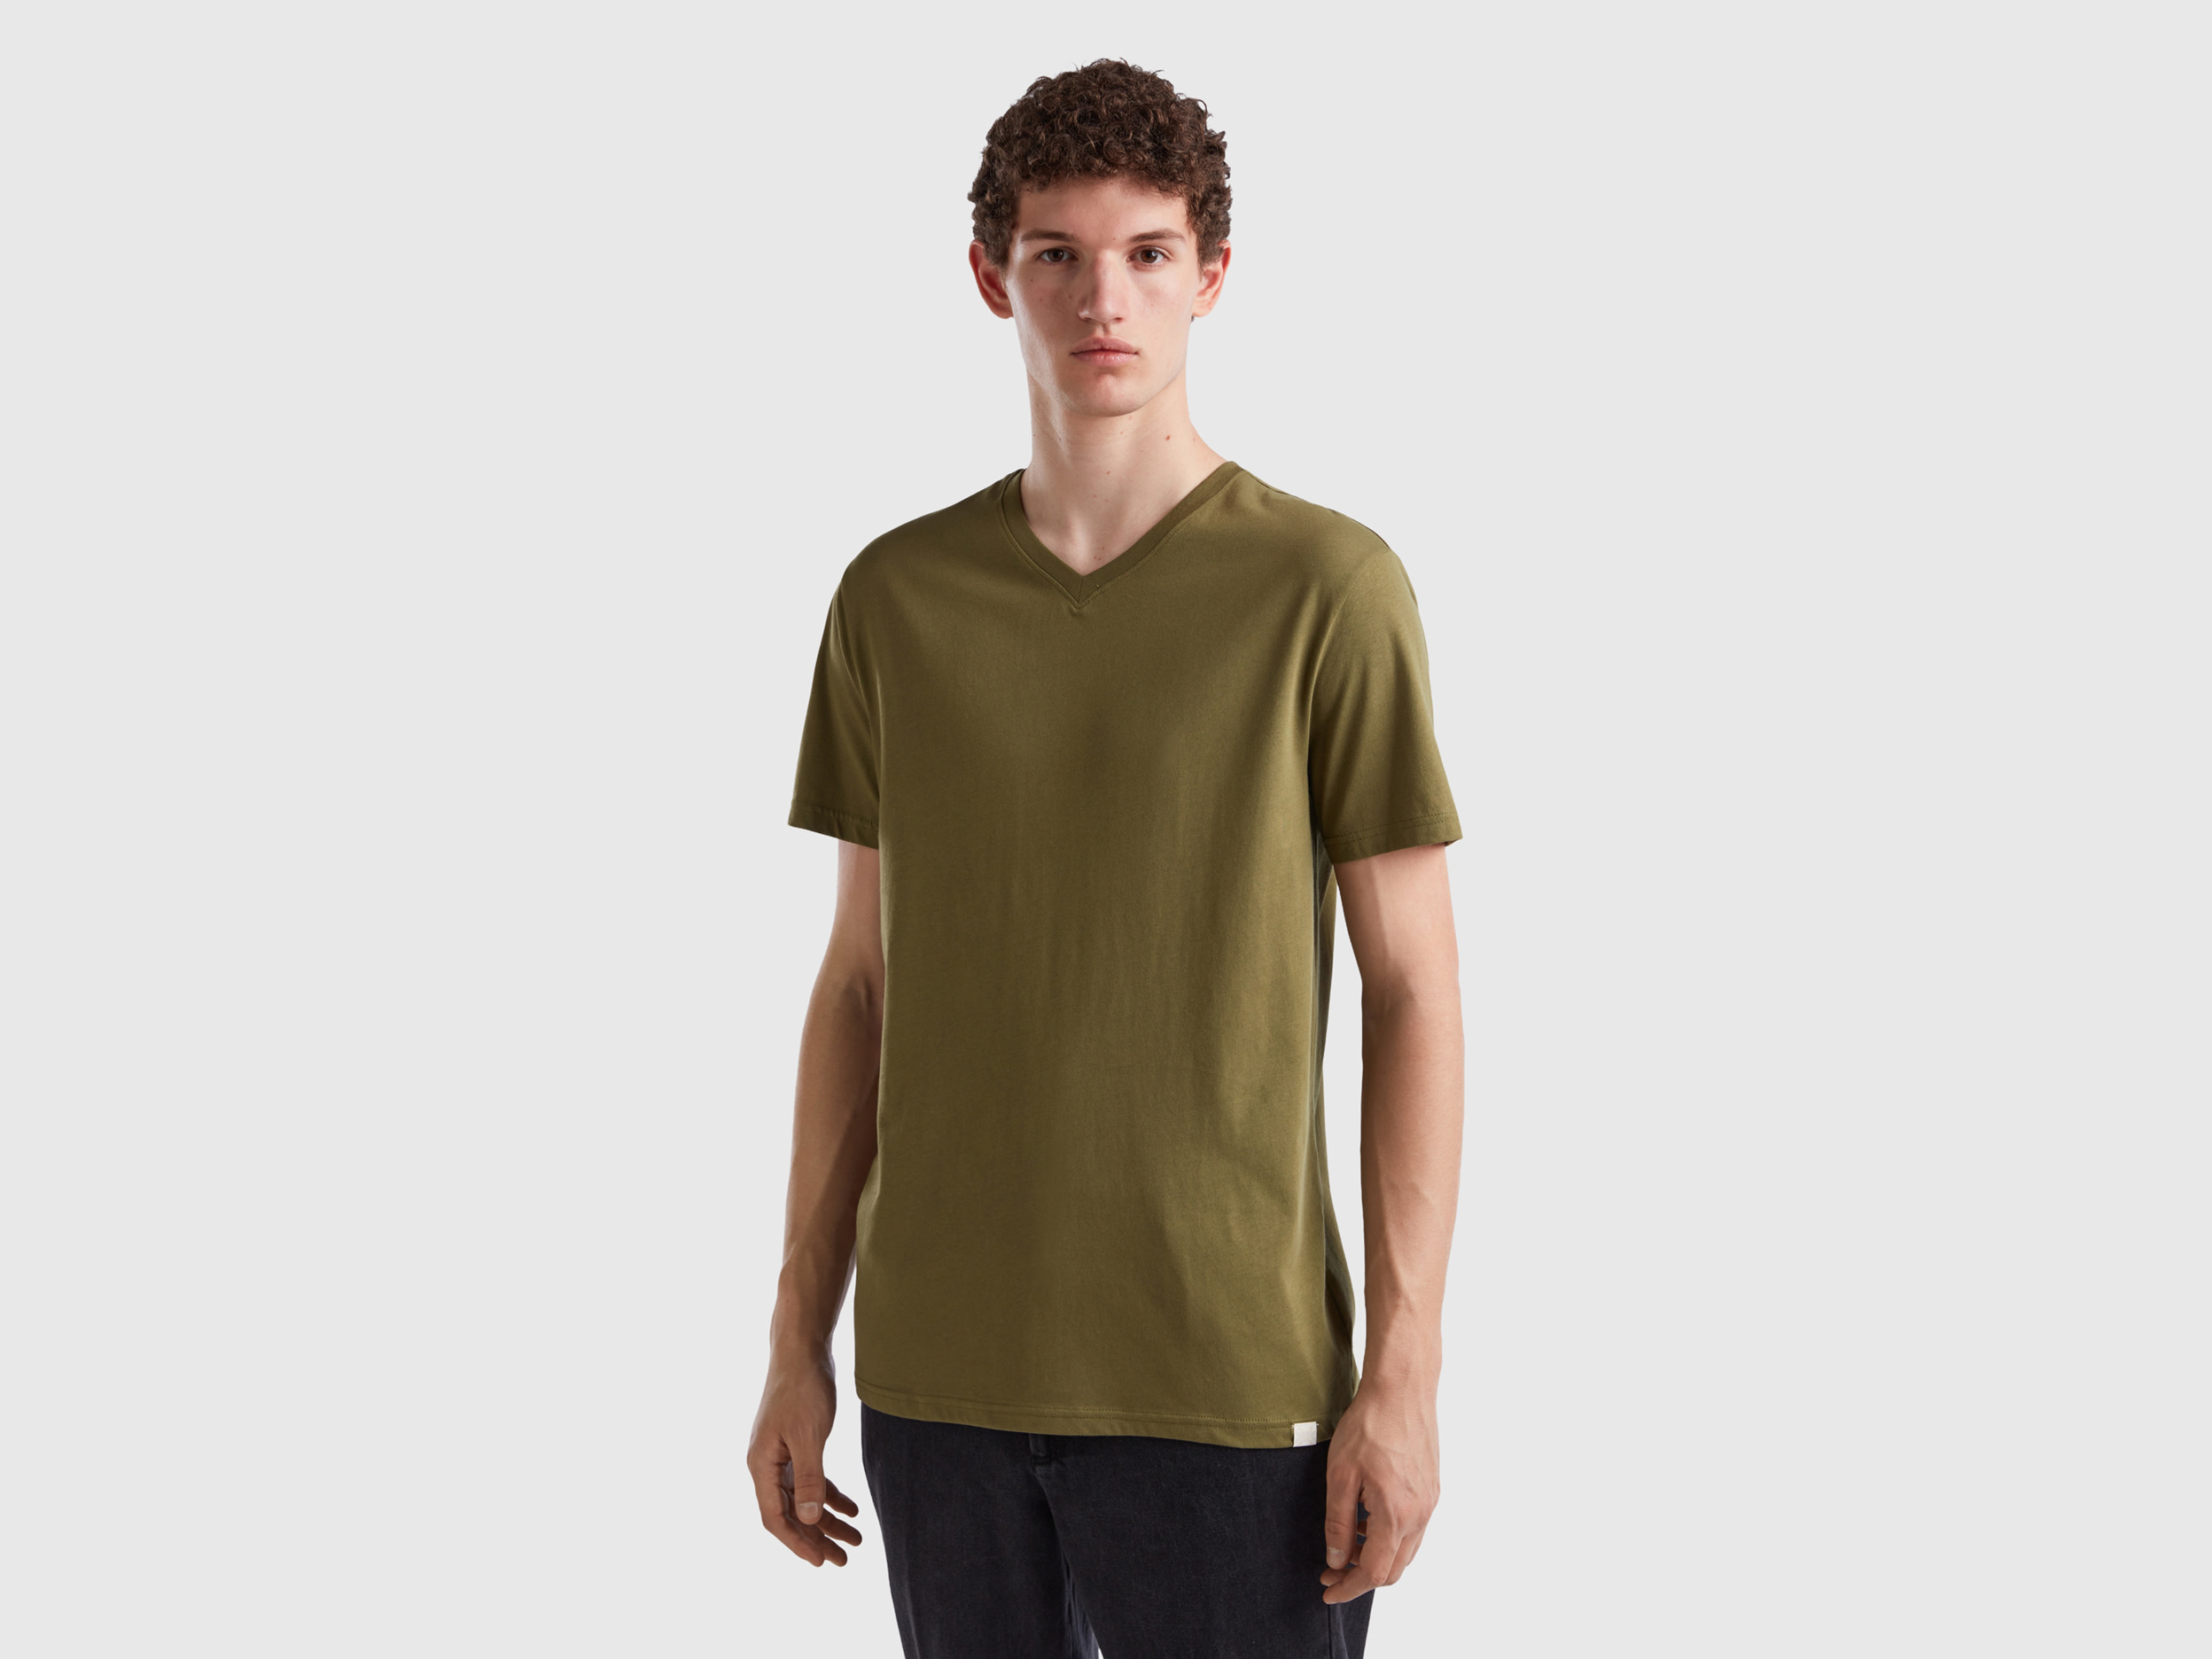 Benetton, T-shirt In Long Fiber Cotton, size XXXL, Military Green, Men